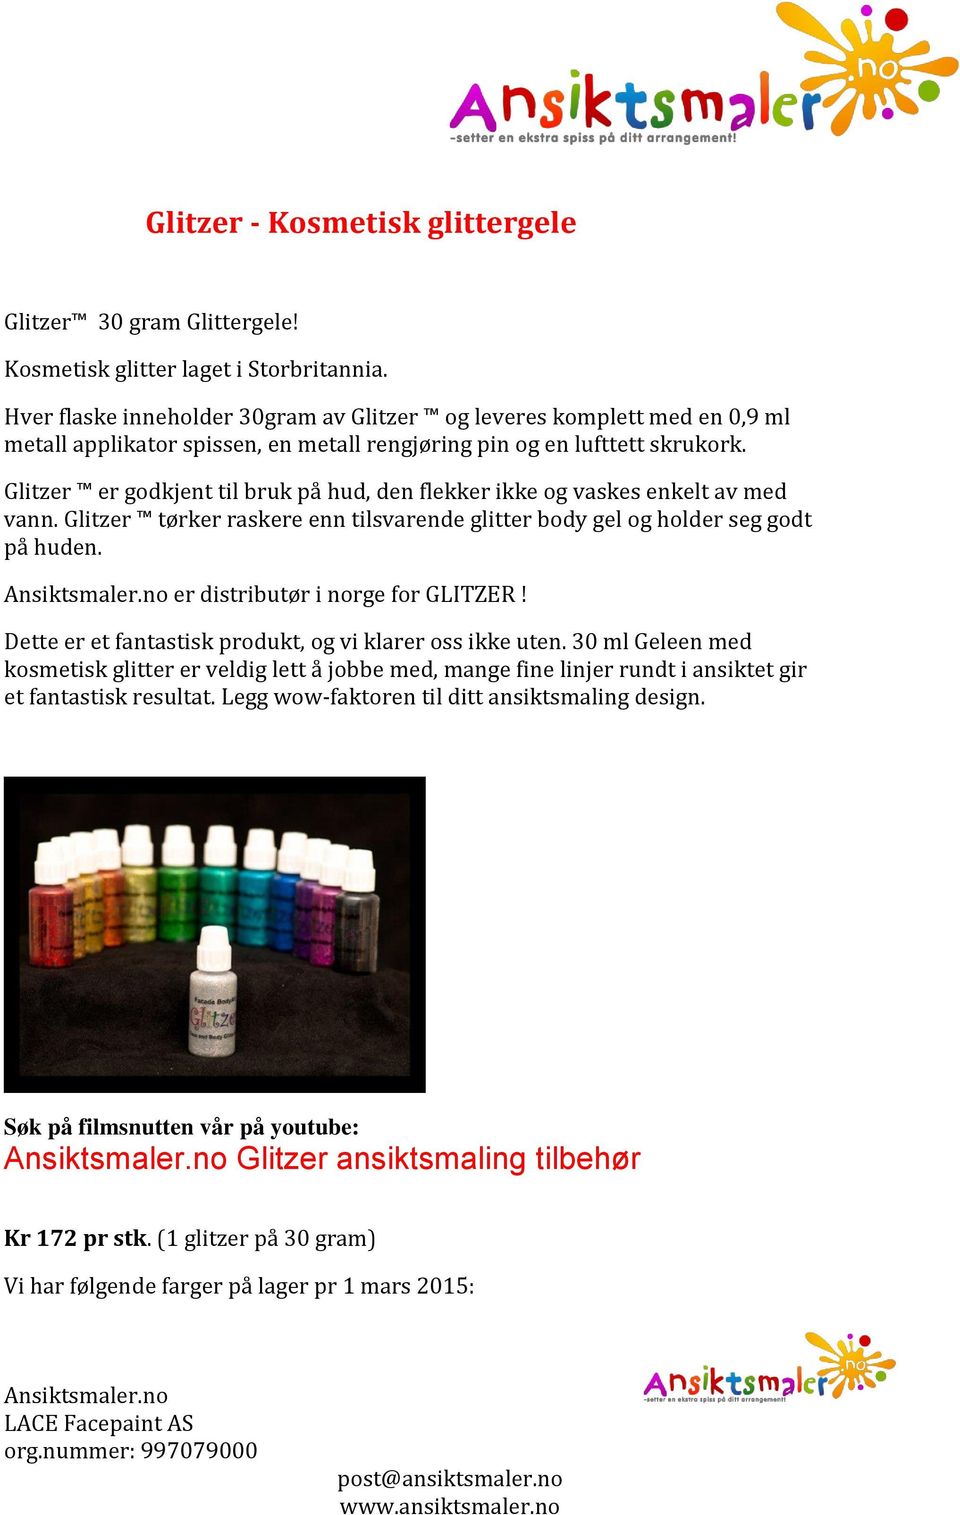 Glitzer er godkjent til bruk på hud, den flekker ikke og vaskes enkelt av med vann. Glitzer tørker raskere enn tilsvarende glitter body gel og holder seg godt på huden.